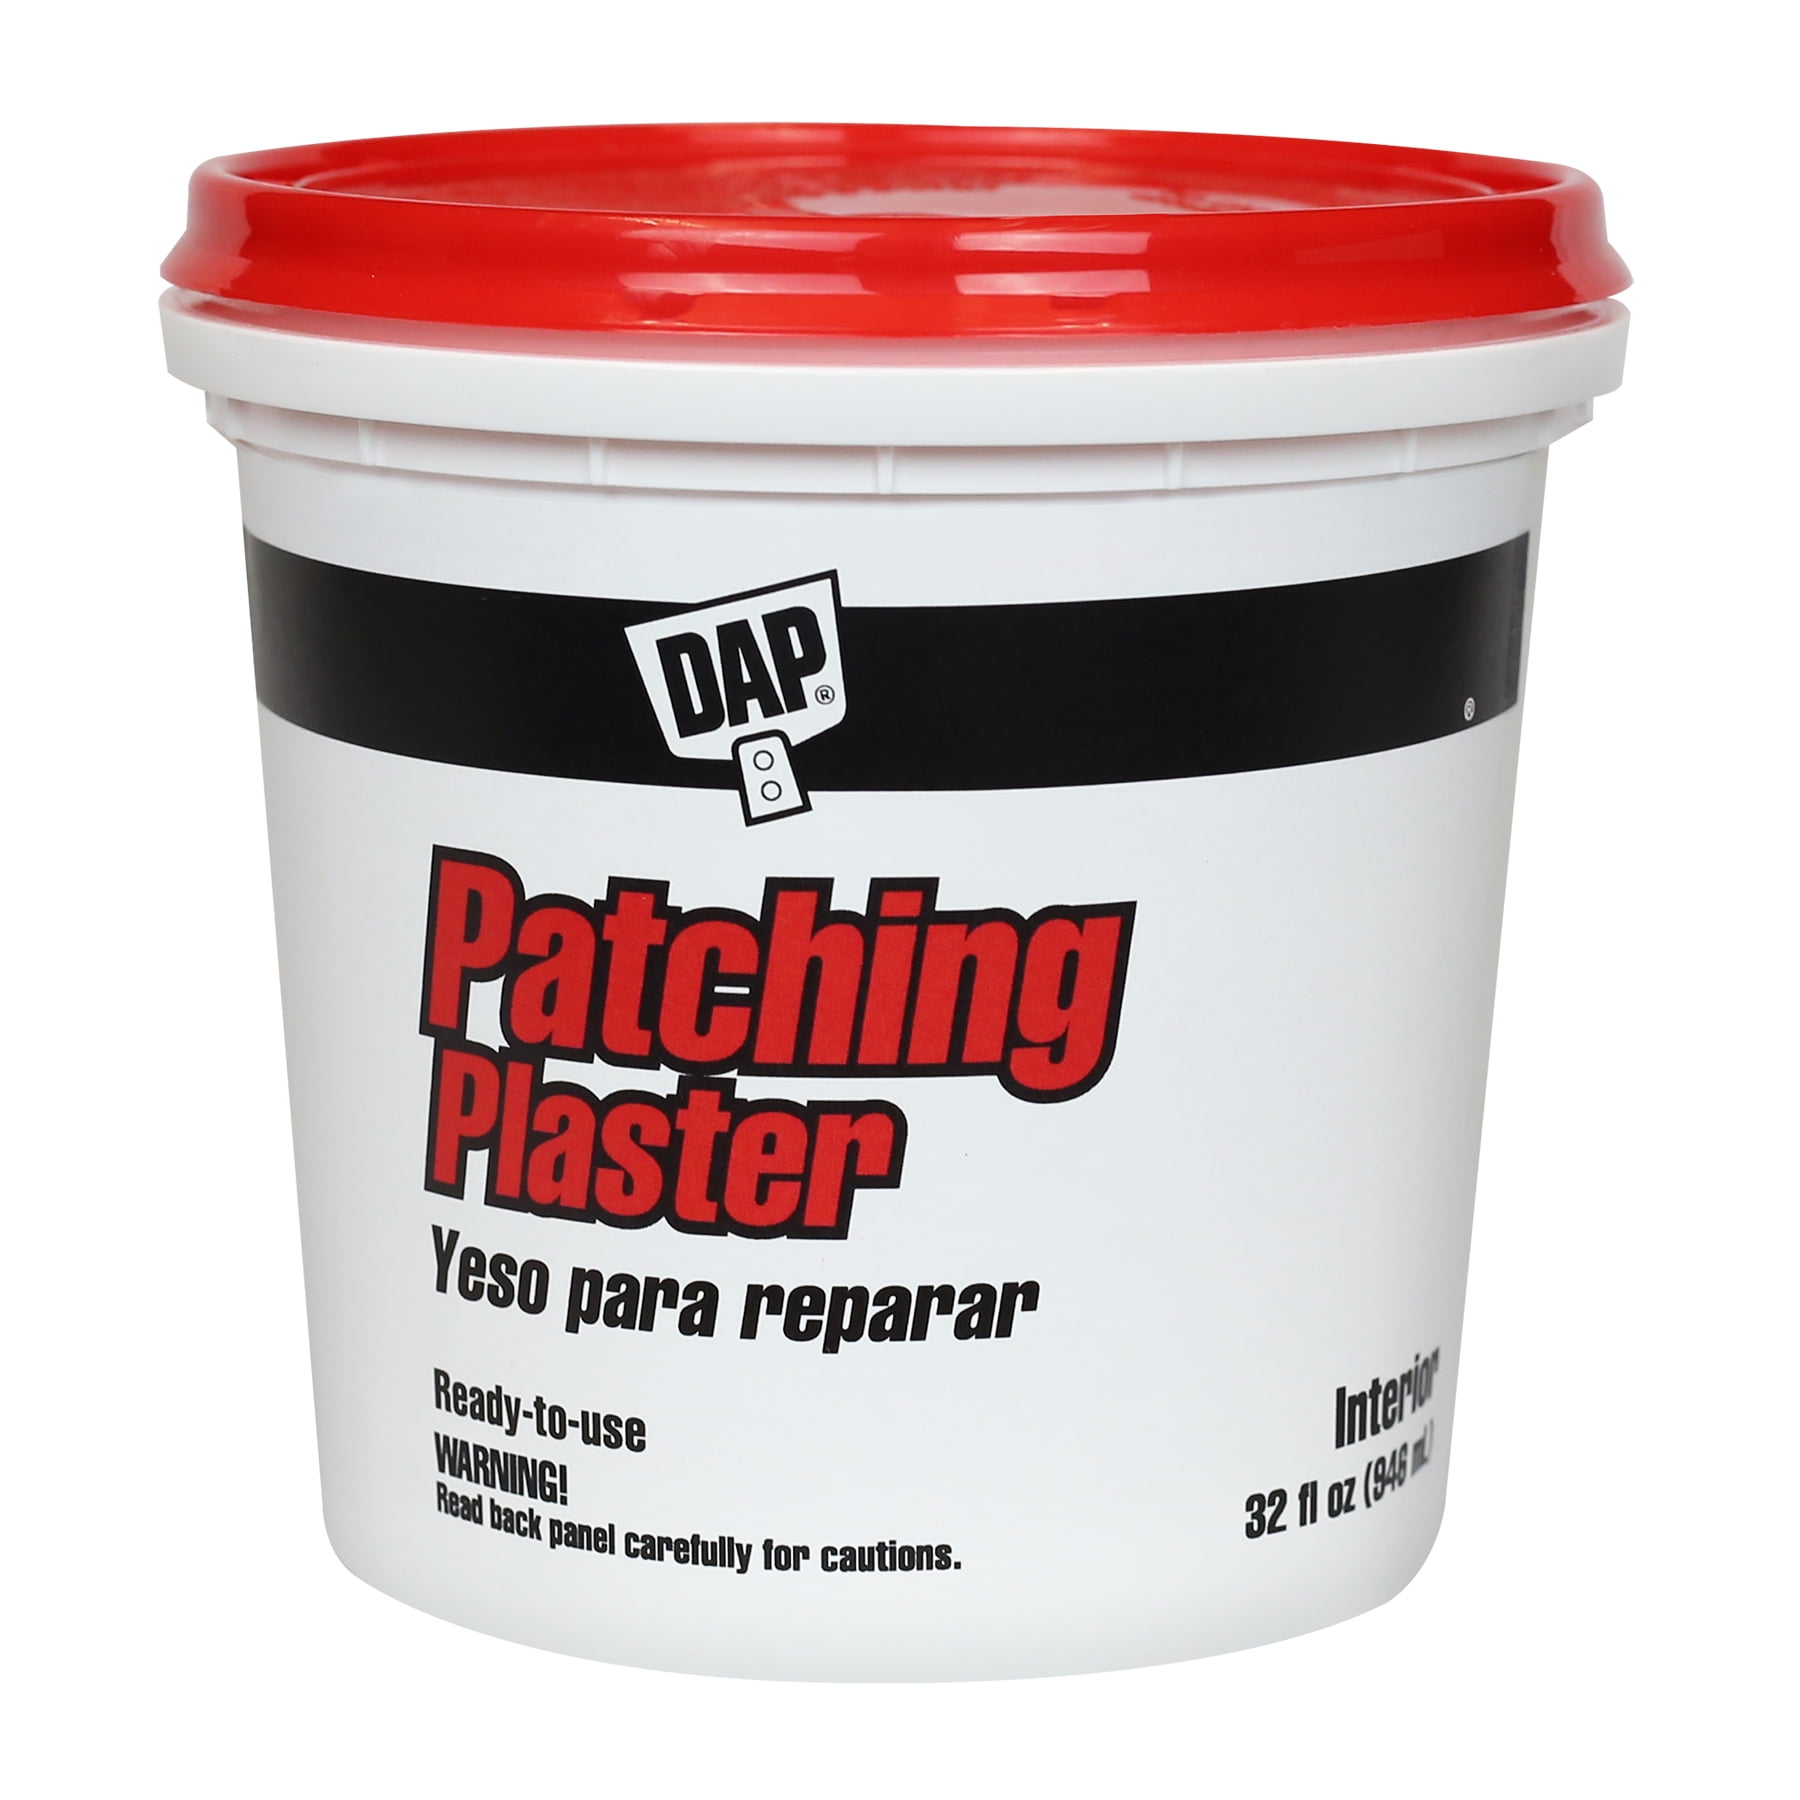 DAP Patching Plaster, 32 oz